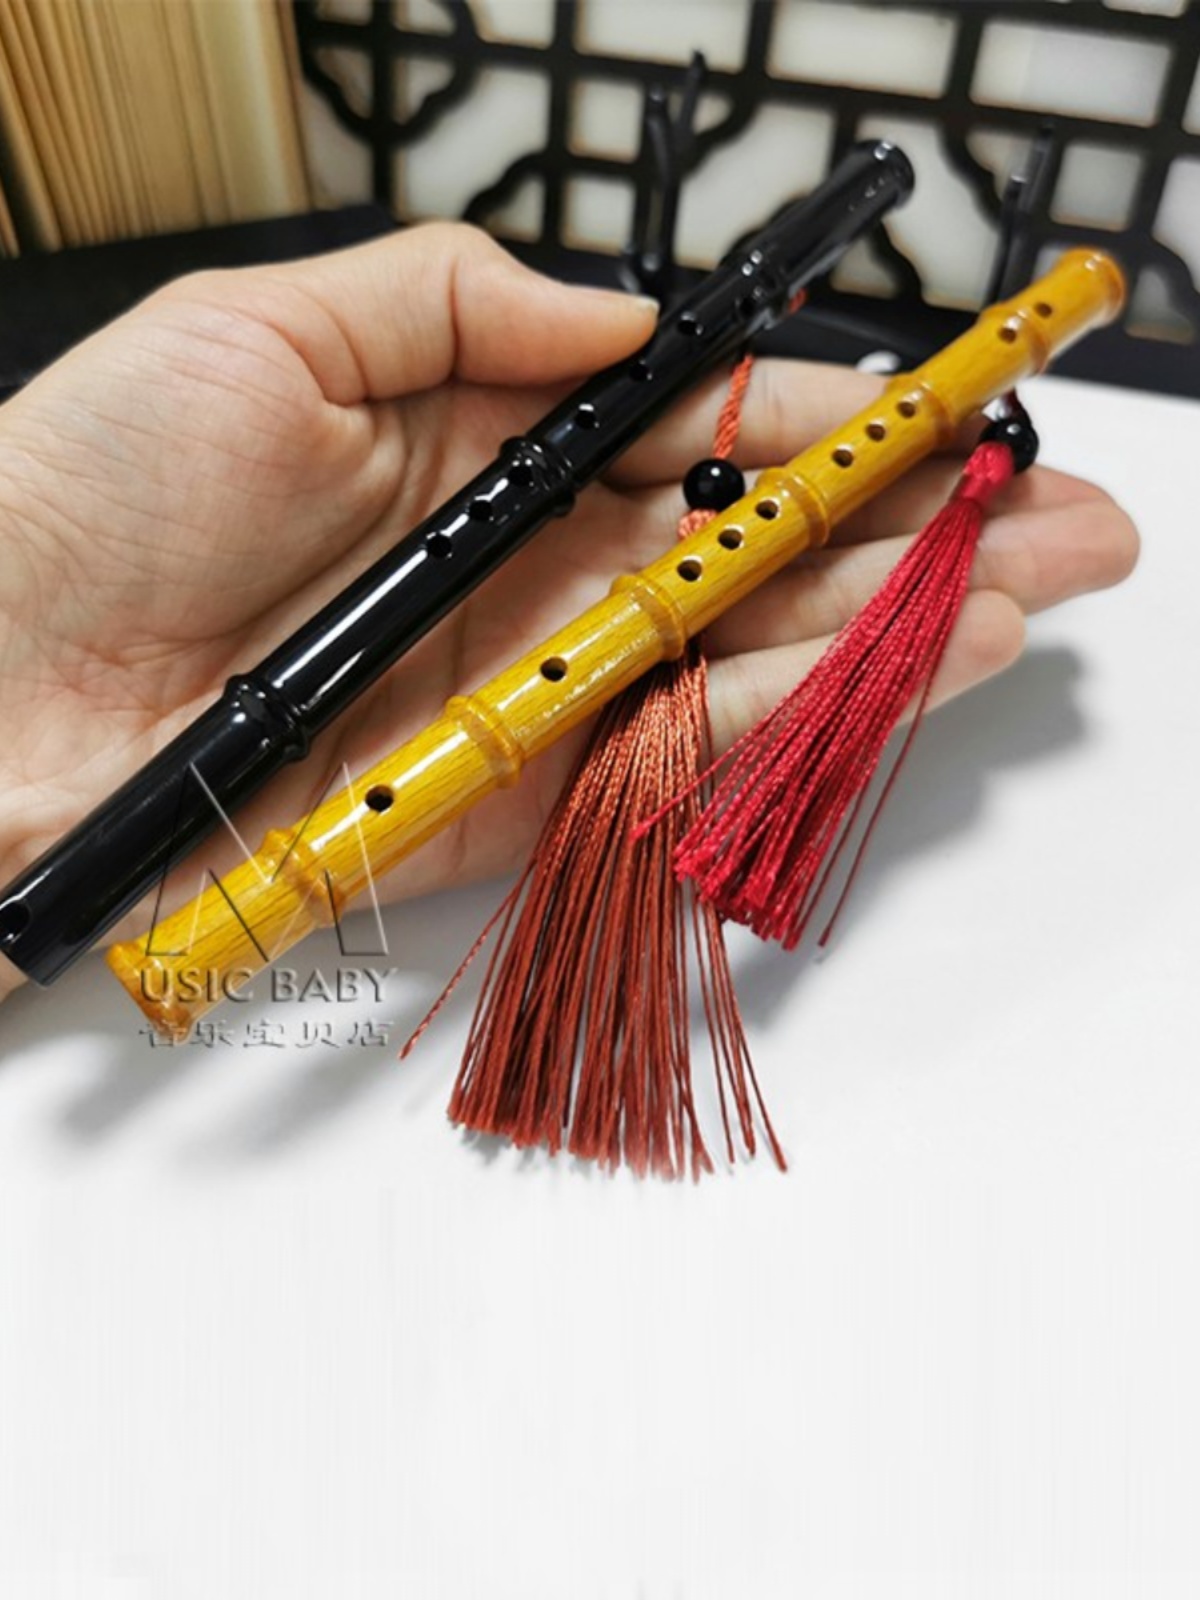 迷你竹笛箫模型摆件木制工艺品中国传统民族乐器礼物竹笛相框礼品